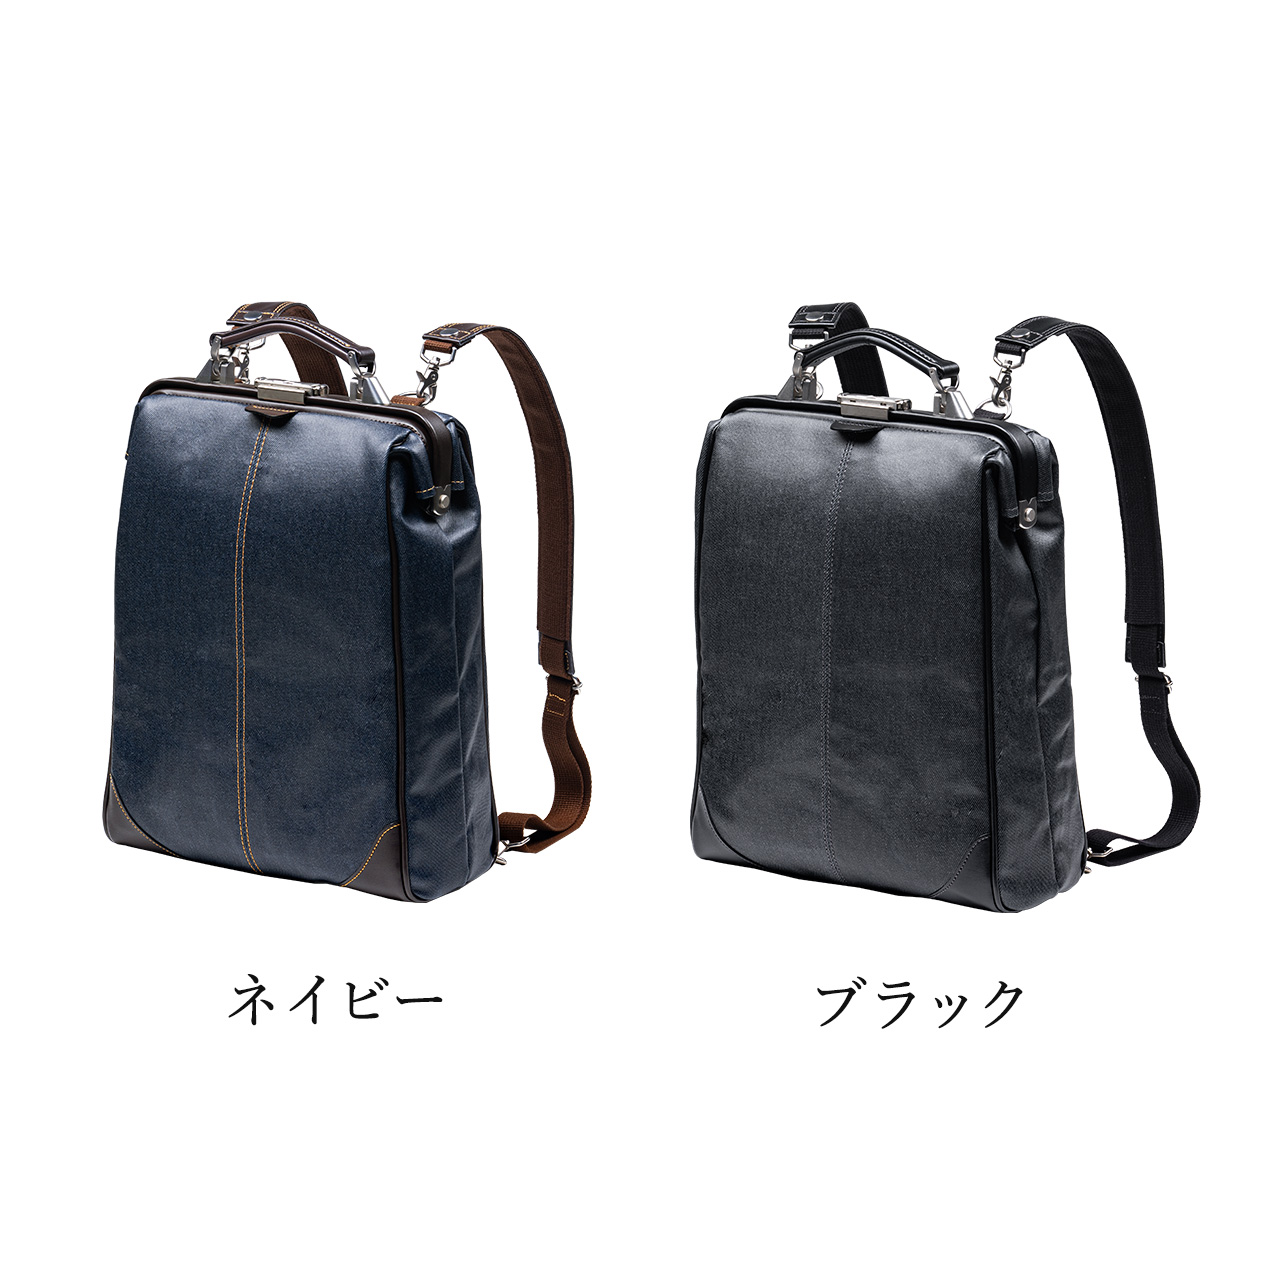 ダレスバッグ メンズ ビジネスバッグ ビジネスリュック 豊岡鞄 日本製 簡易防水 耐水 本革 3WAY 鍵付 縦型 40代 50代 ビジネスバック  200-BAG148